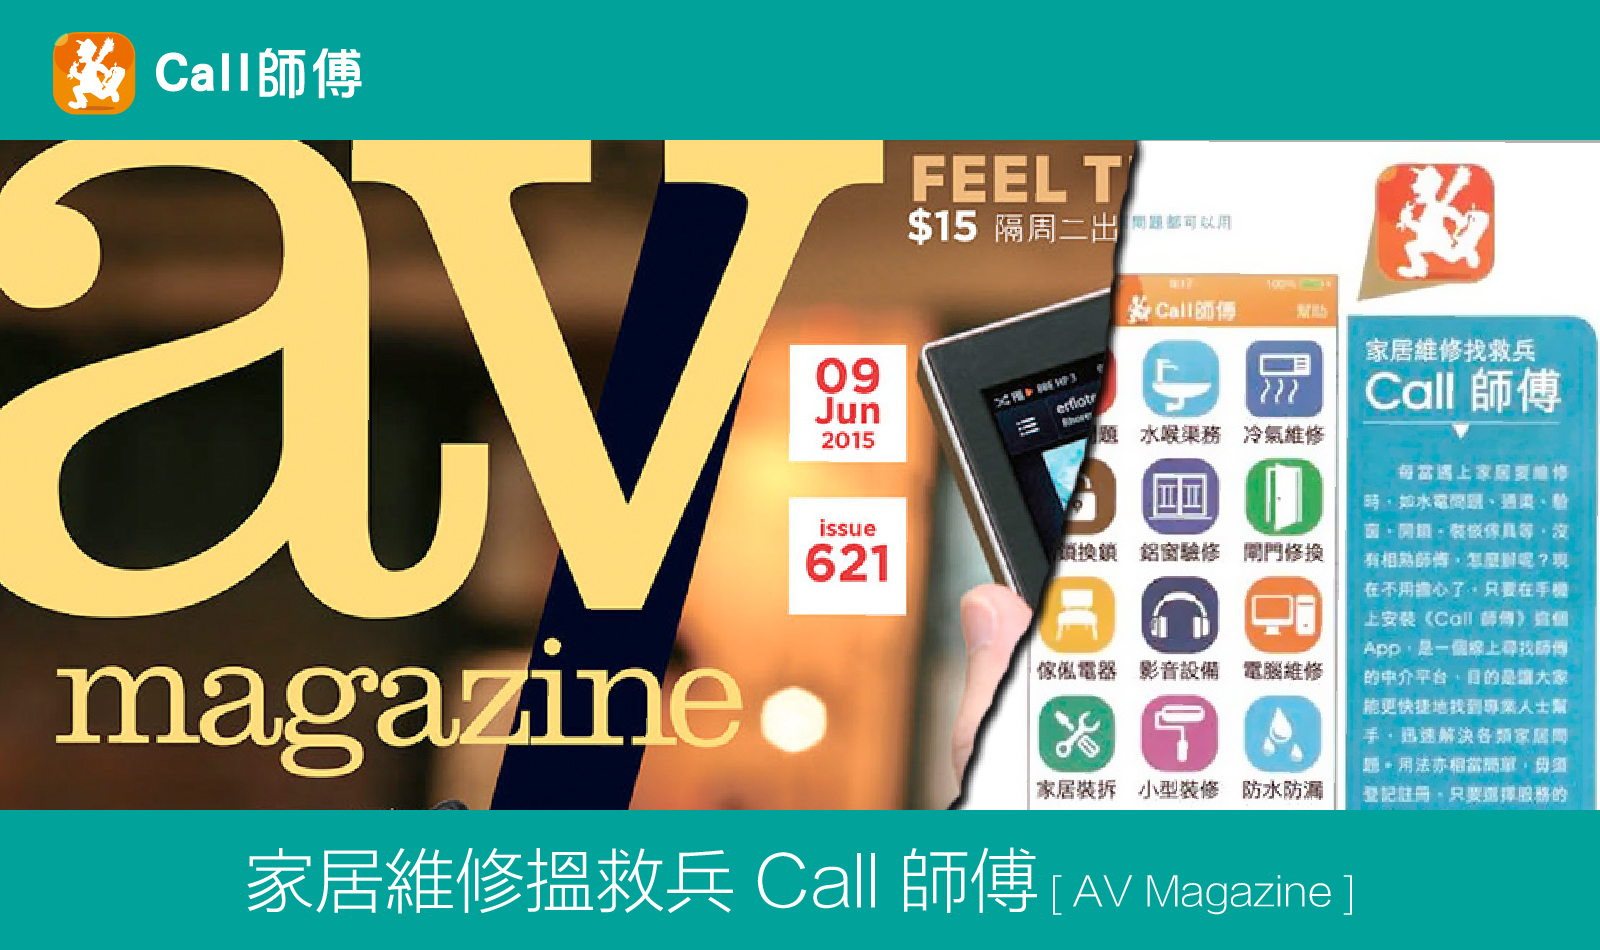 家居維修搵救兵 Call 師傅 [ AV Magazine ]